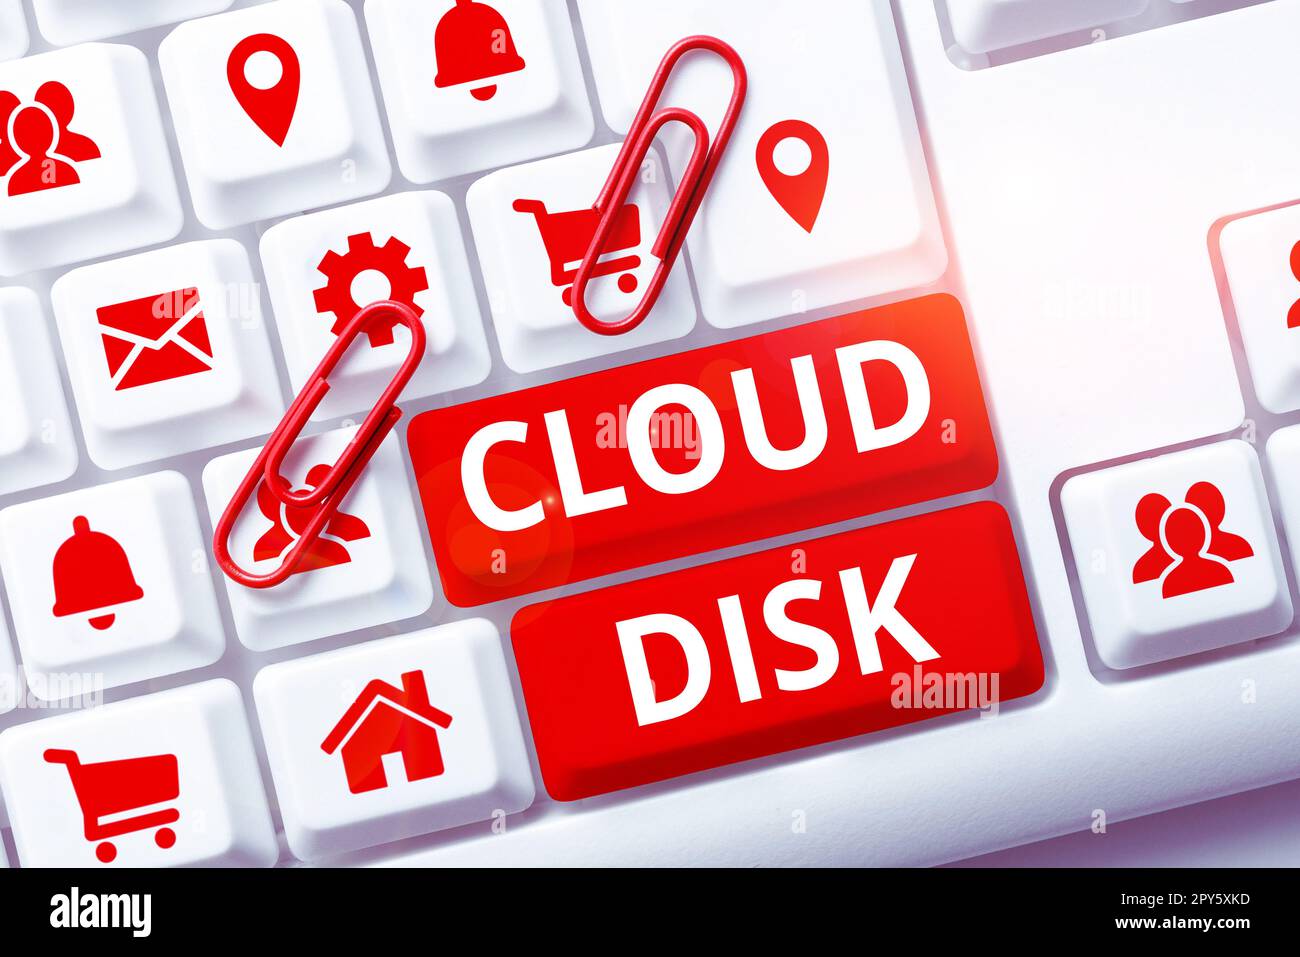 Scrittura a mano segno Cloud Disk. Servizio di base Web per vetrina aziendale che fornisce spazio di archiviazione su un server remoto Foto Stock